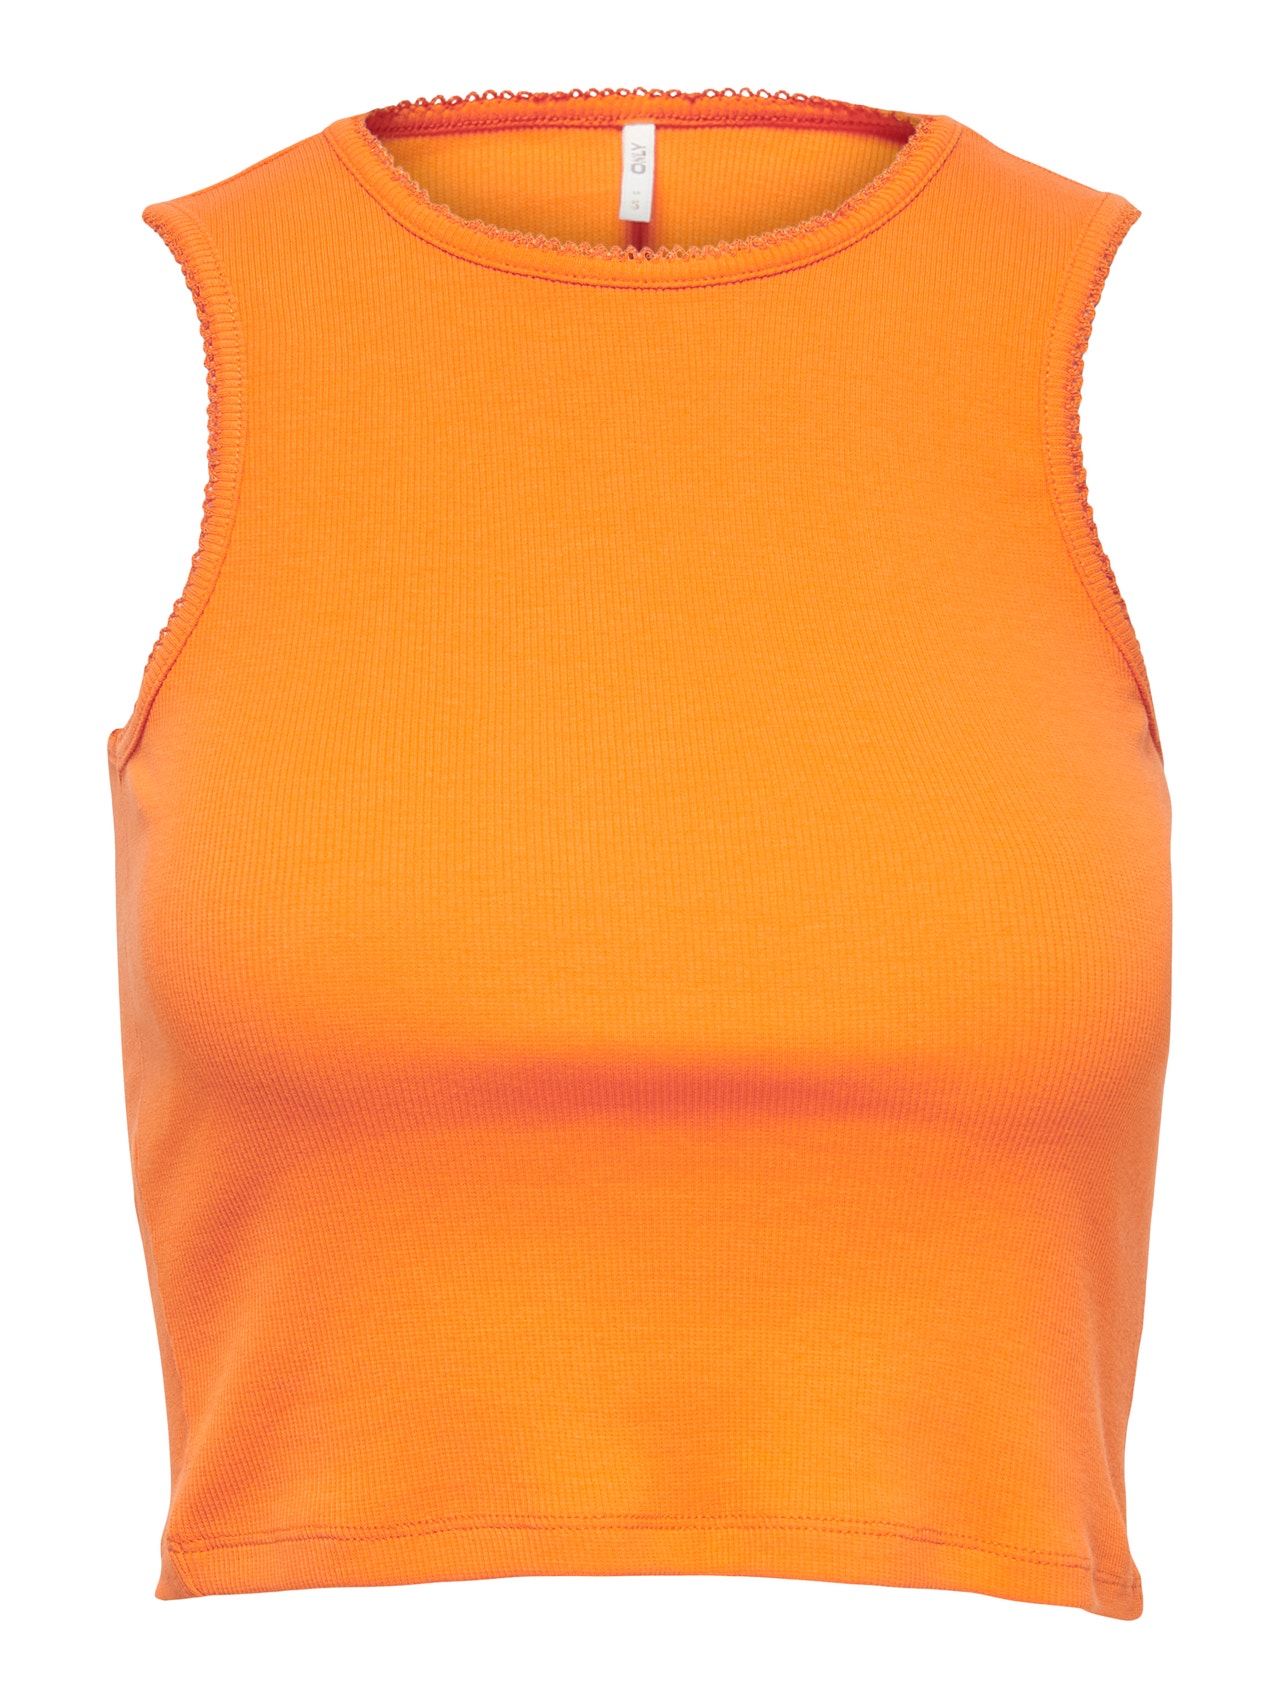 GRECIILOOKS Womens Cotton Blend Roundneck Tops (Pack of 1) Orange_XL